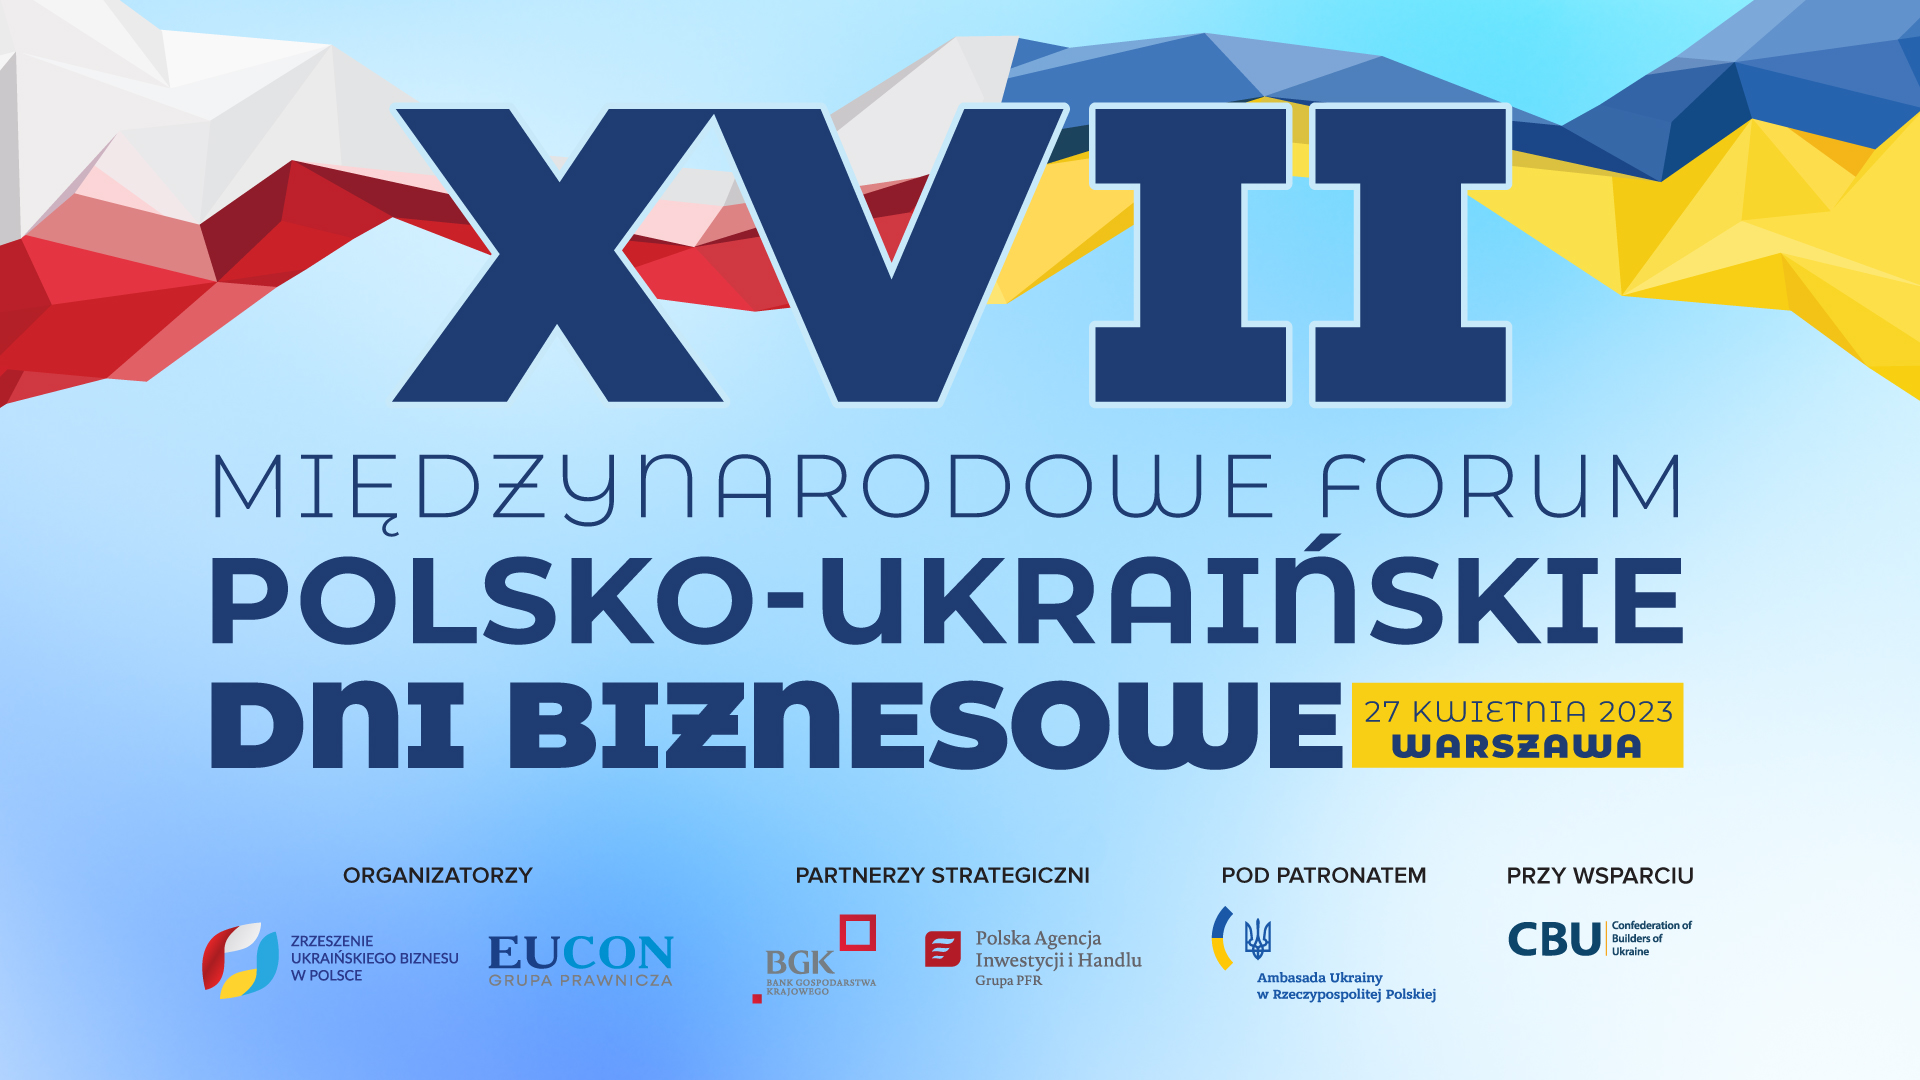 27 апреля в Варшаве состоится XVII Международный форум «Польско-украинские дни бизнеса»